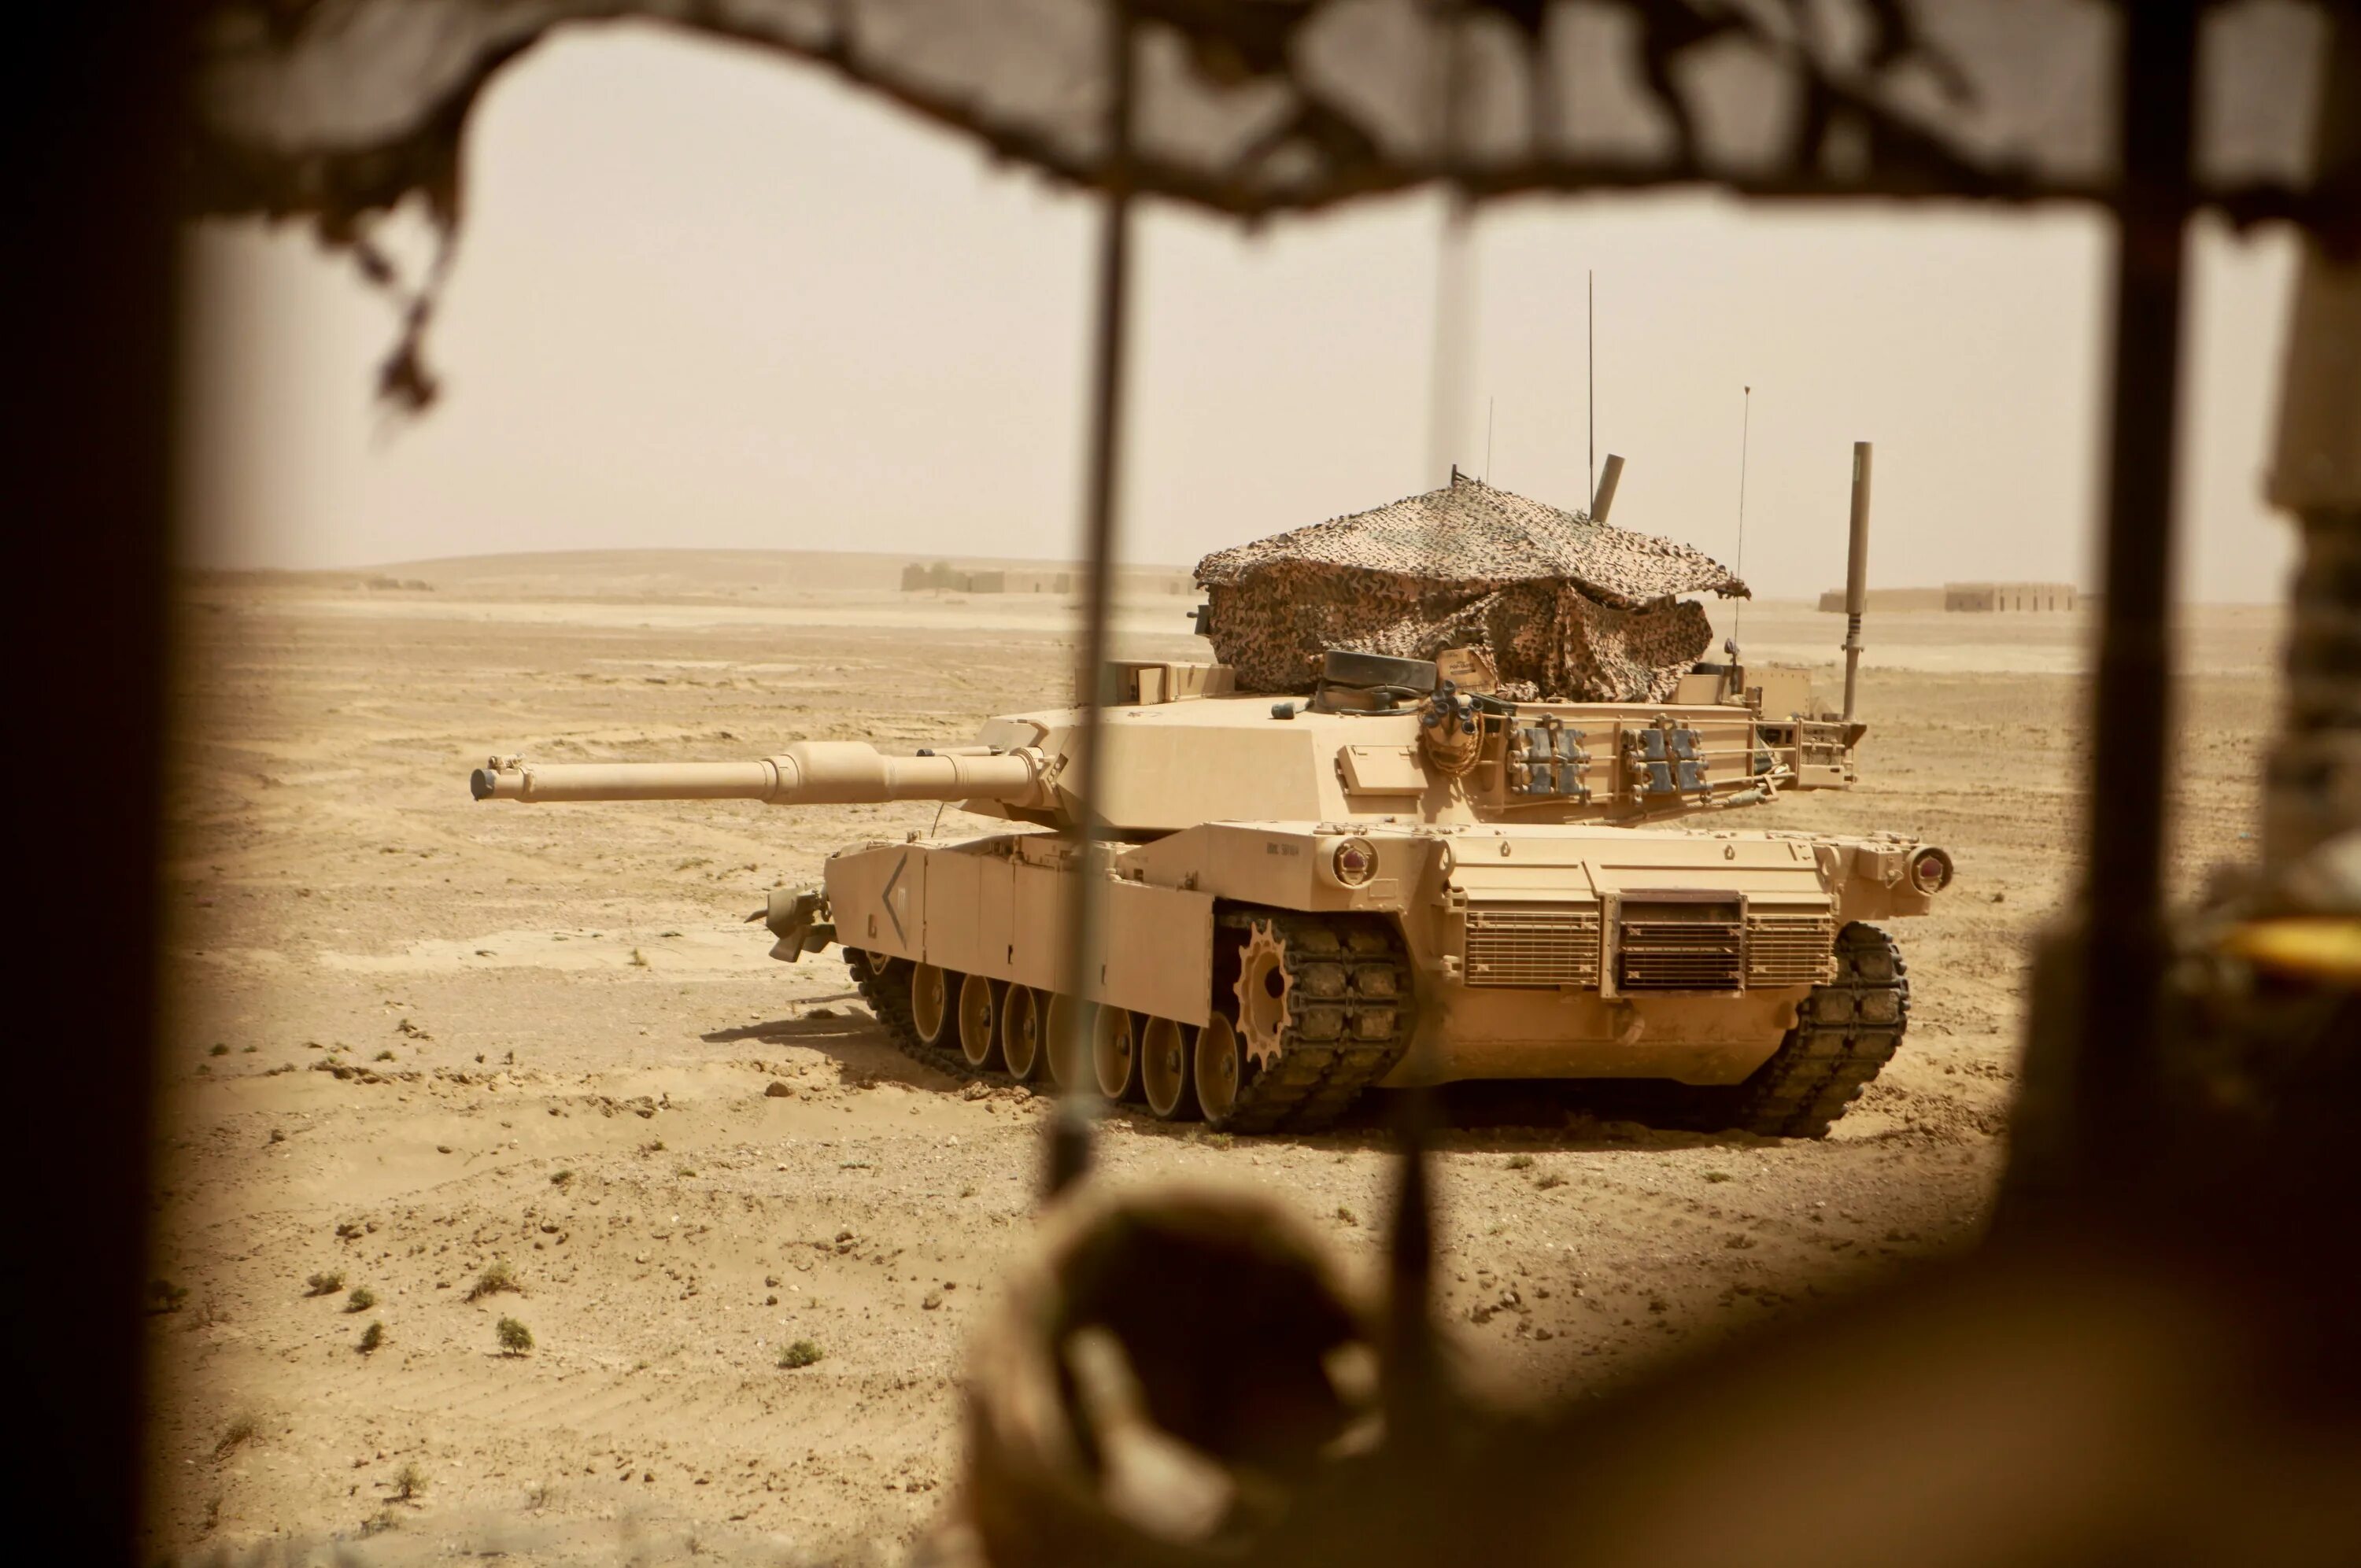 Еще один абрамс. M1 Abrams в Ираке. Танк Абрамс в Афганистане. M1a1 Abrams USMC milds Turret. Абрамс 2001 Афганистан.